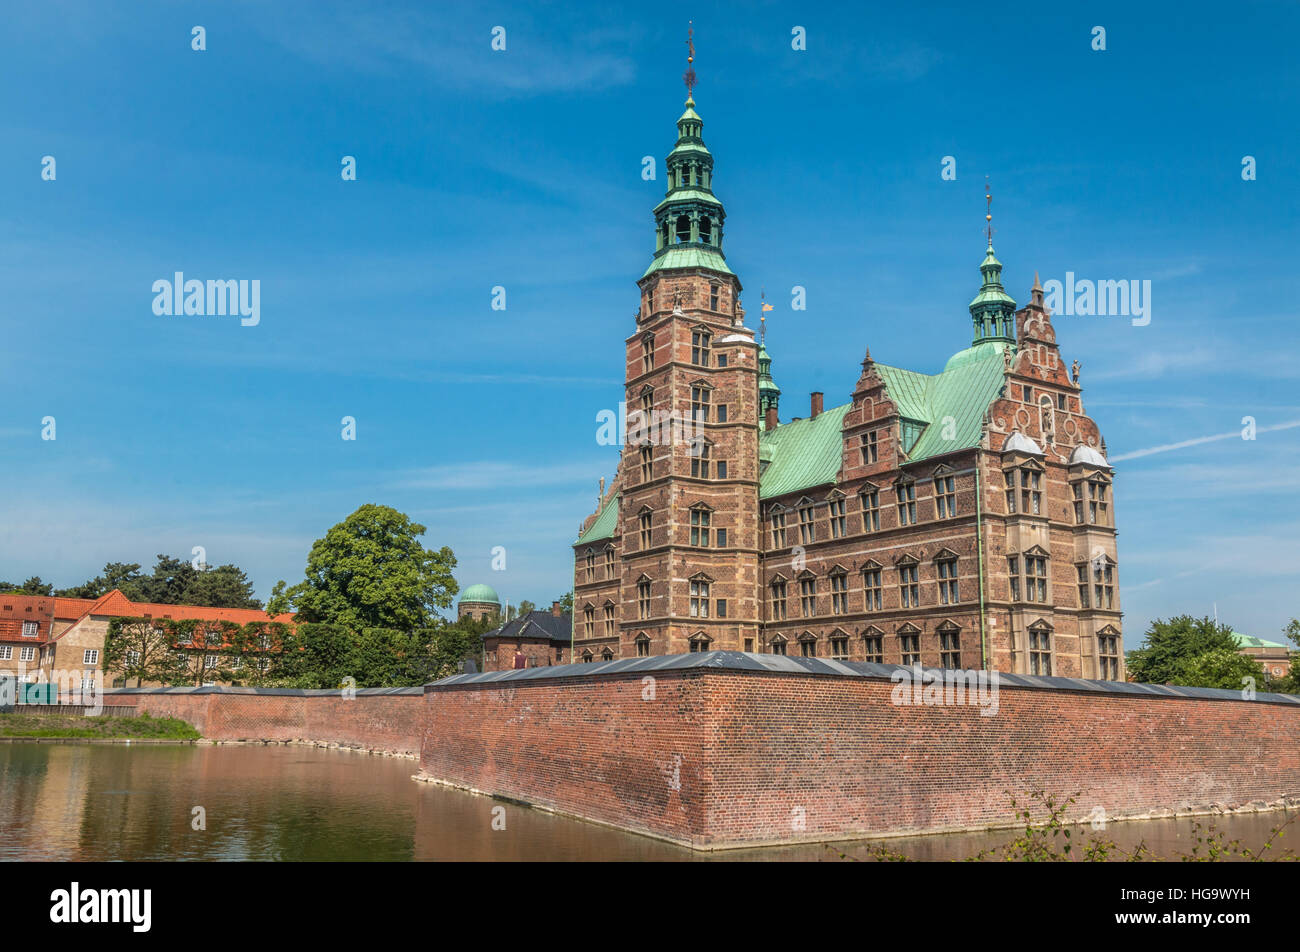 Belle vue sur Rosenborg à Copenhague au Danemark Banque D'Images